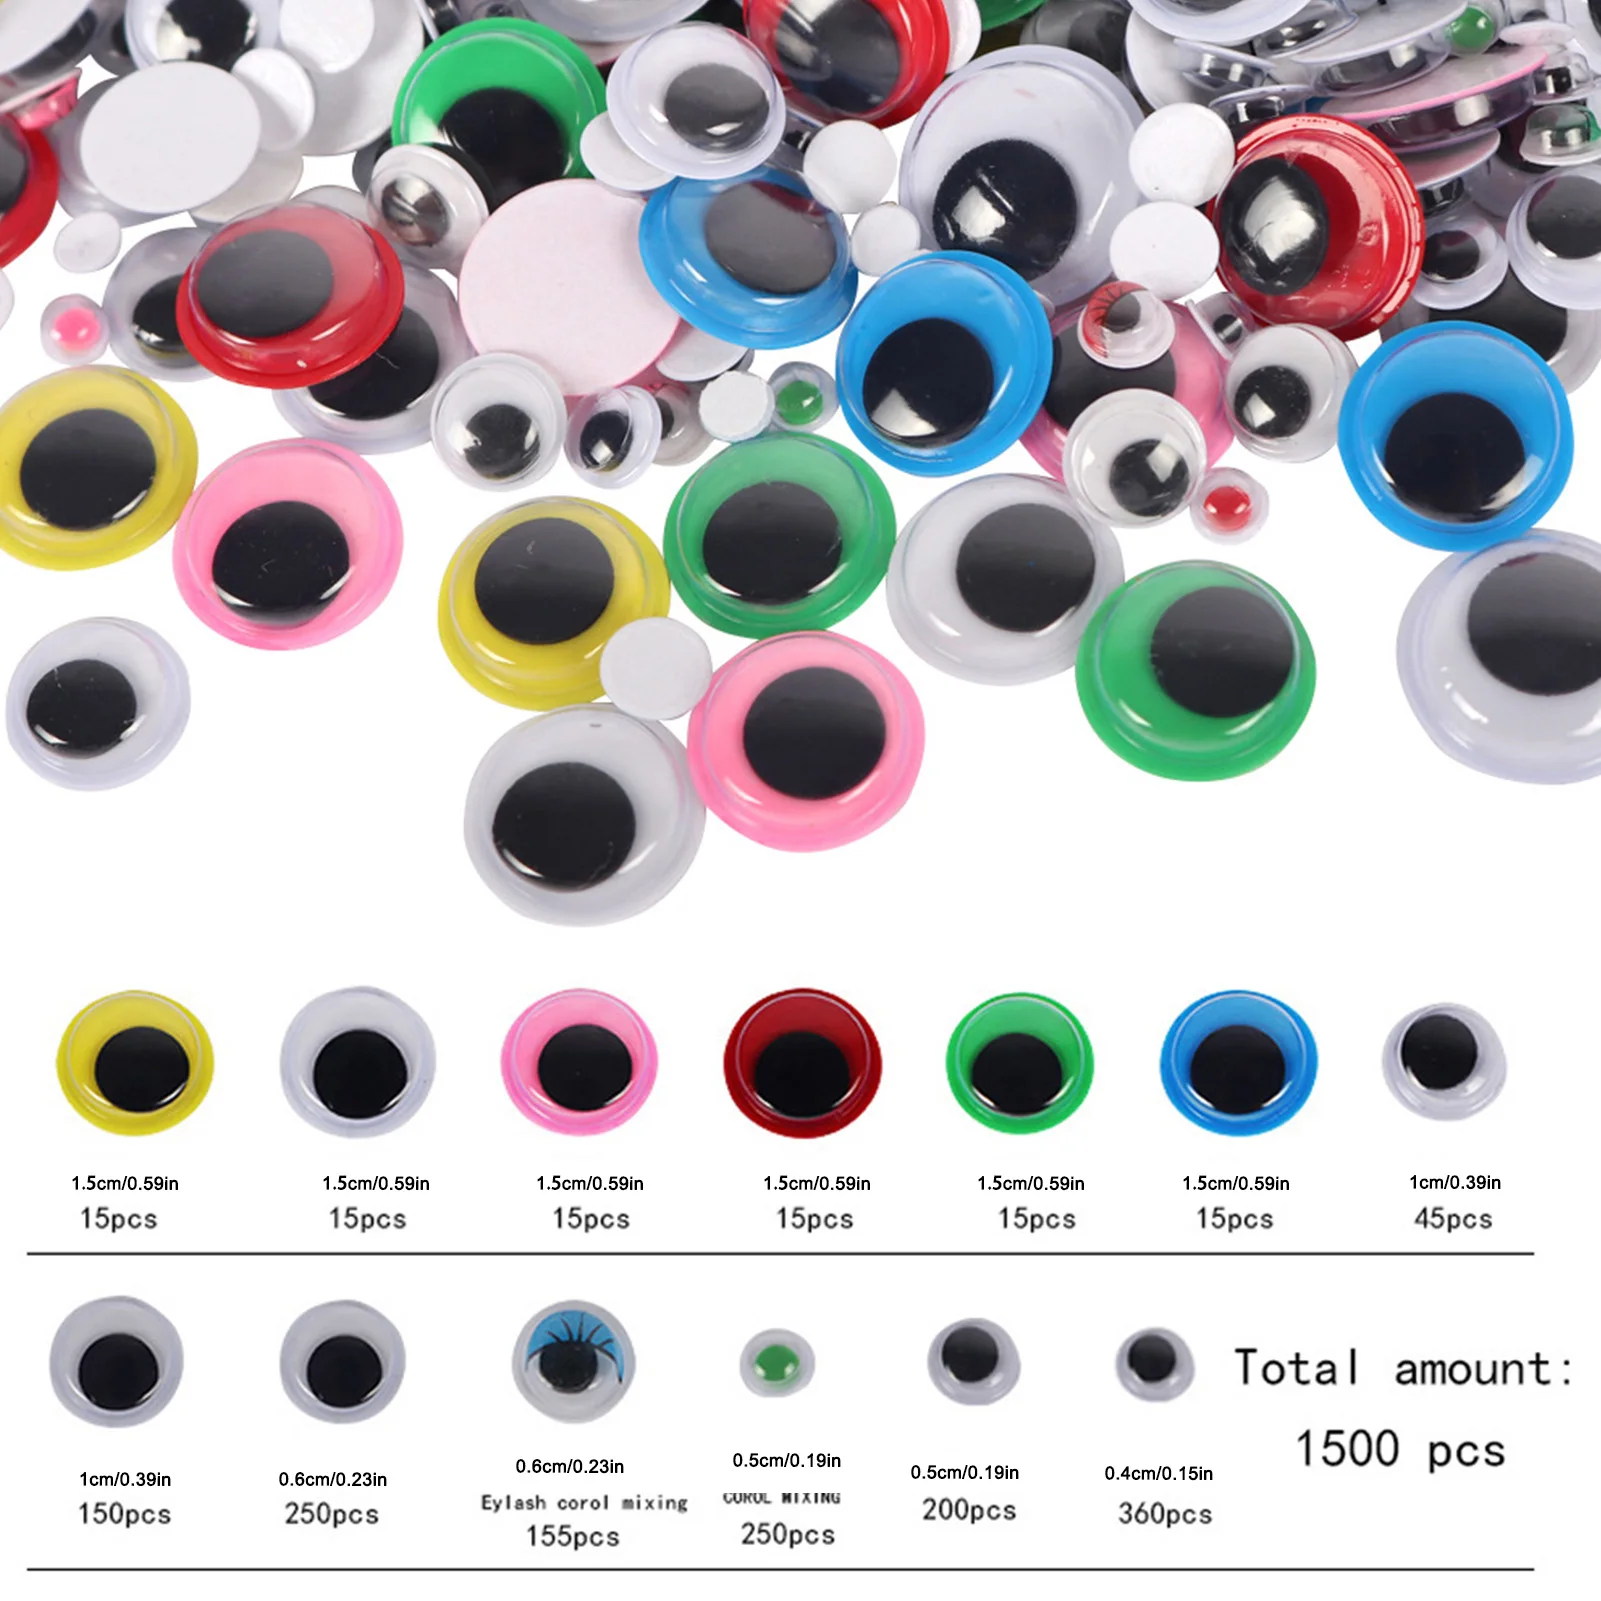 Googly Eye Art — Googly Eye Stainless Steel Holder and OXO Utensils